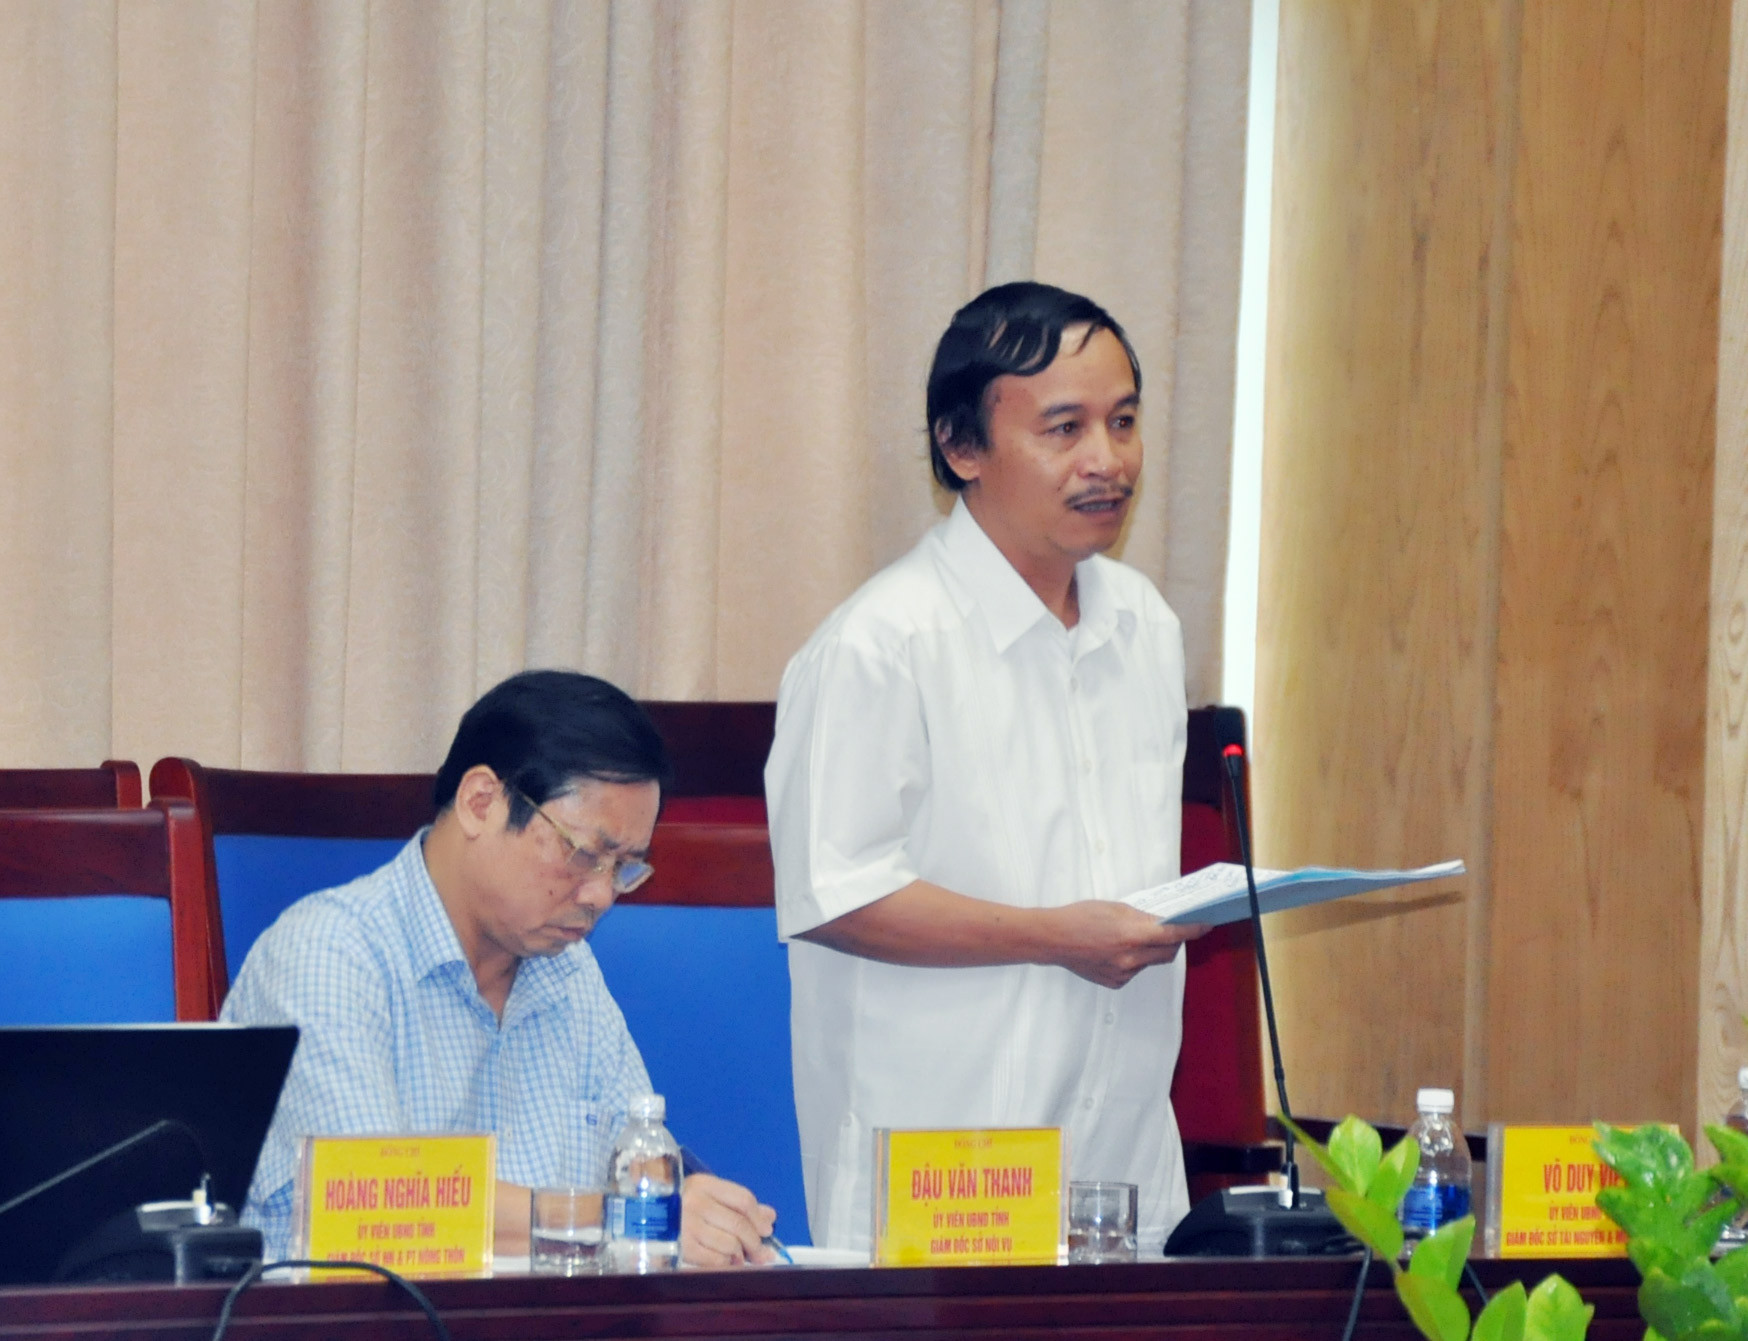 Giám đốc Sở Tài Nguyên &MT Võ Duy Việt phát biểu cho biết tồn dư hóa chất bảo vệ thực vật rất phức tạp, đòi hỏi nguồn kinh phí lớn. Ảnh: Thu Huyền